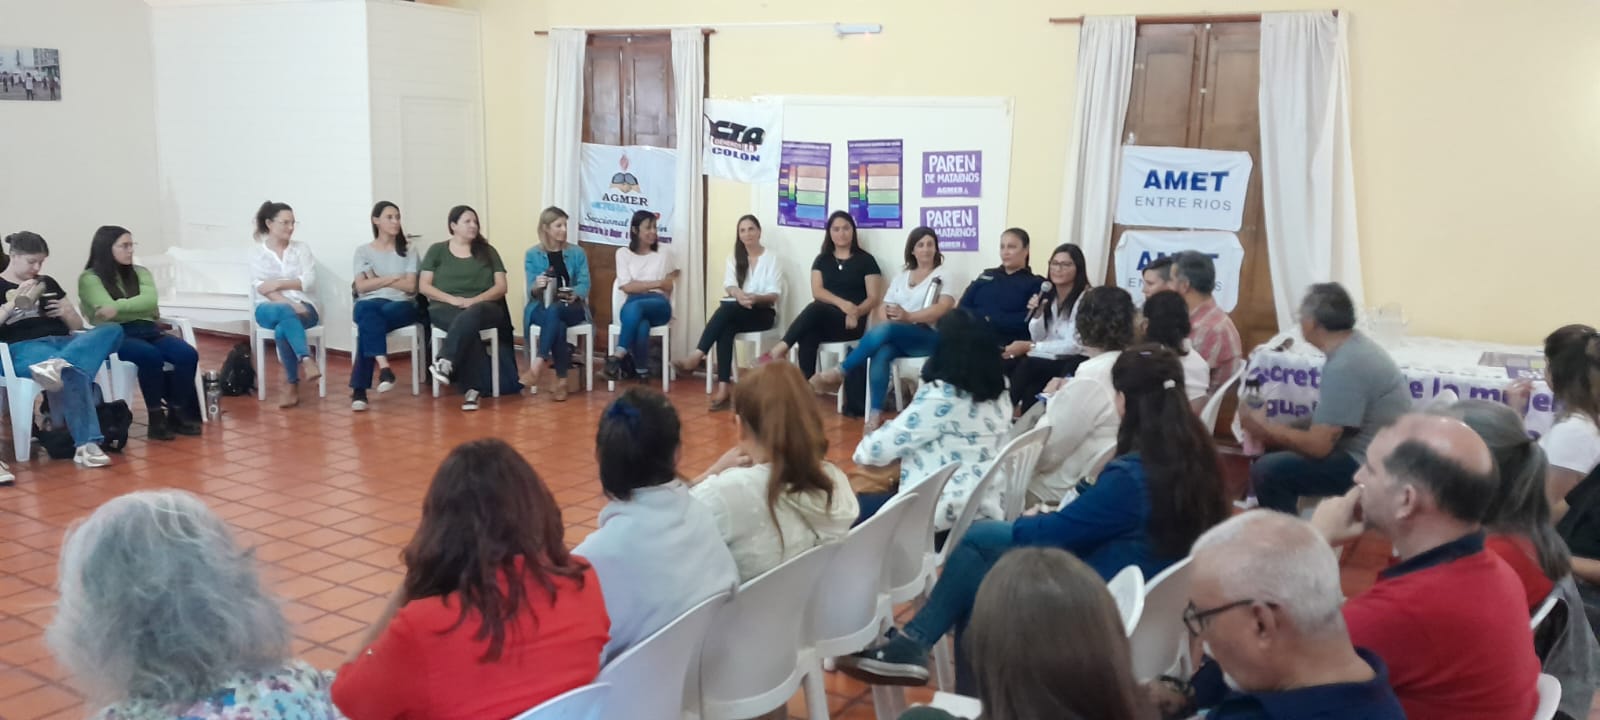 Villa Elisa participó del Conversatorio “Circuitos y protocolos en situaciones de violencia de género”